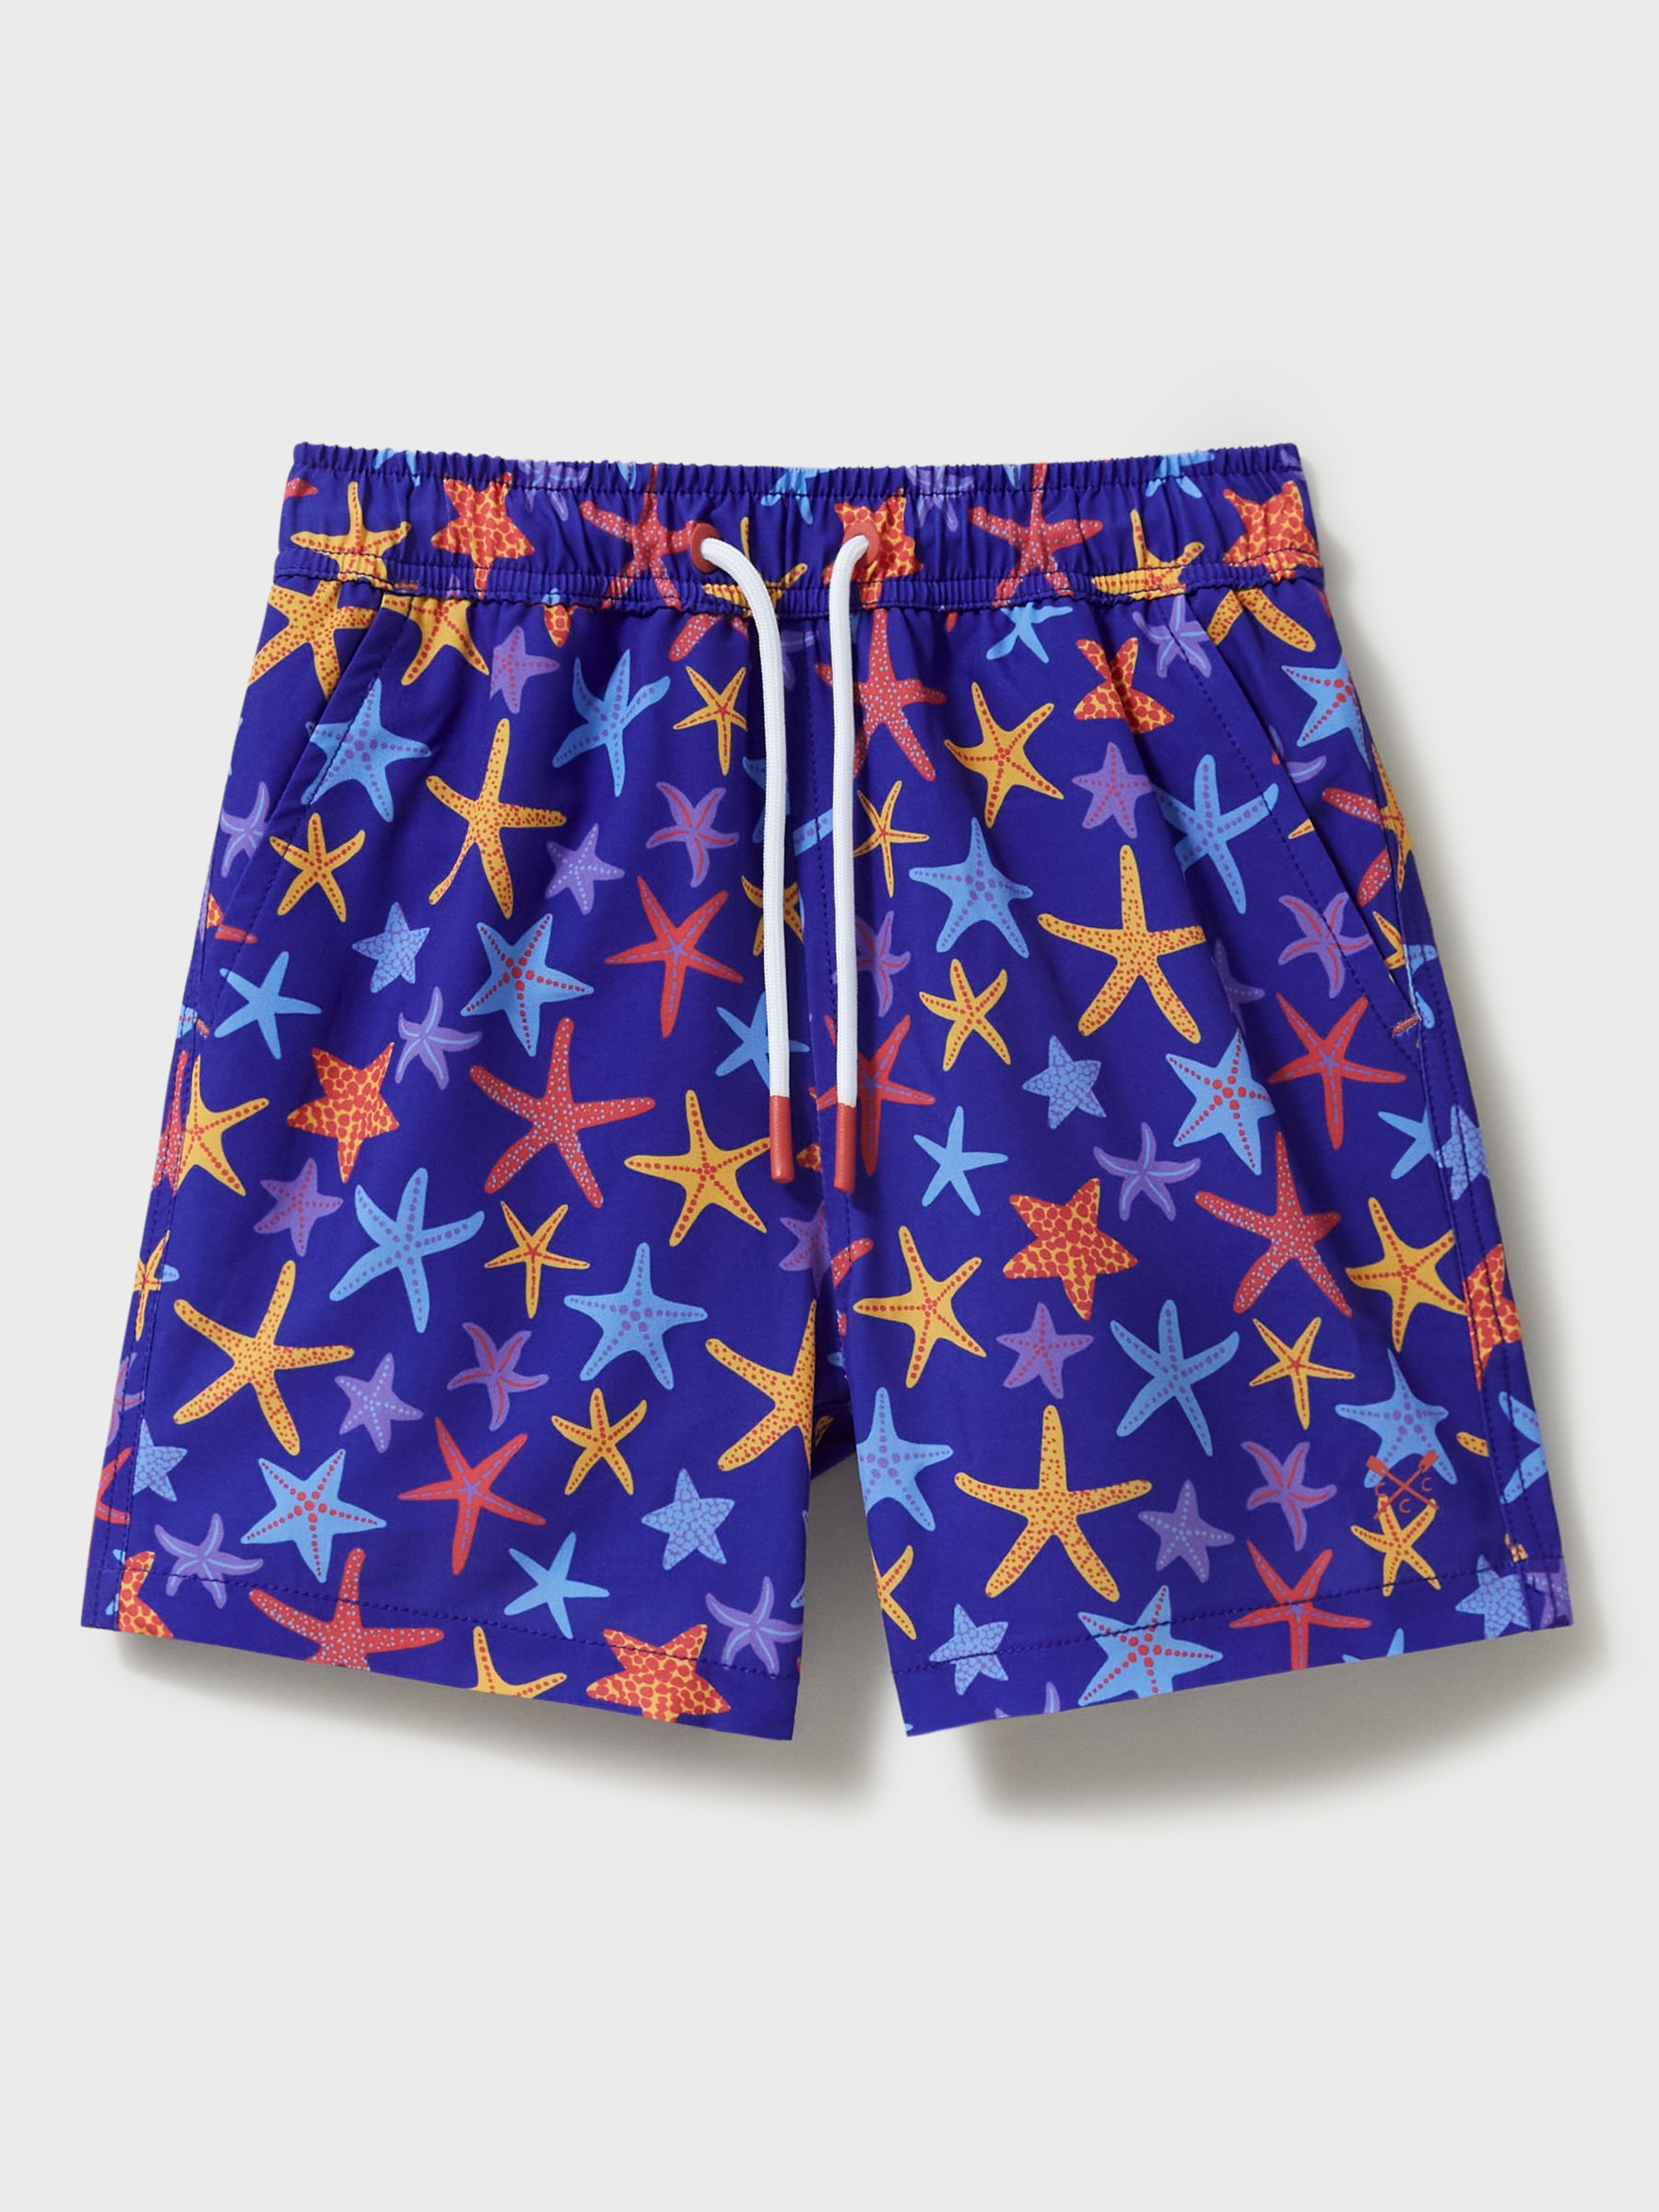 Crew Clothing Kids' Starfish Print Swim Shorts, Blue/Multi, 8-9 years